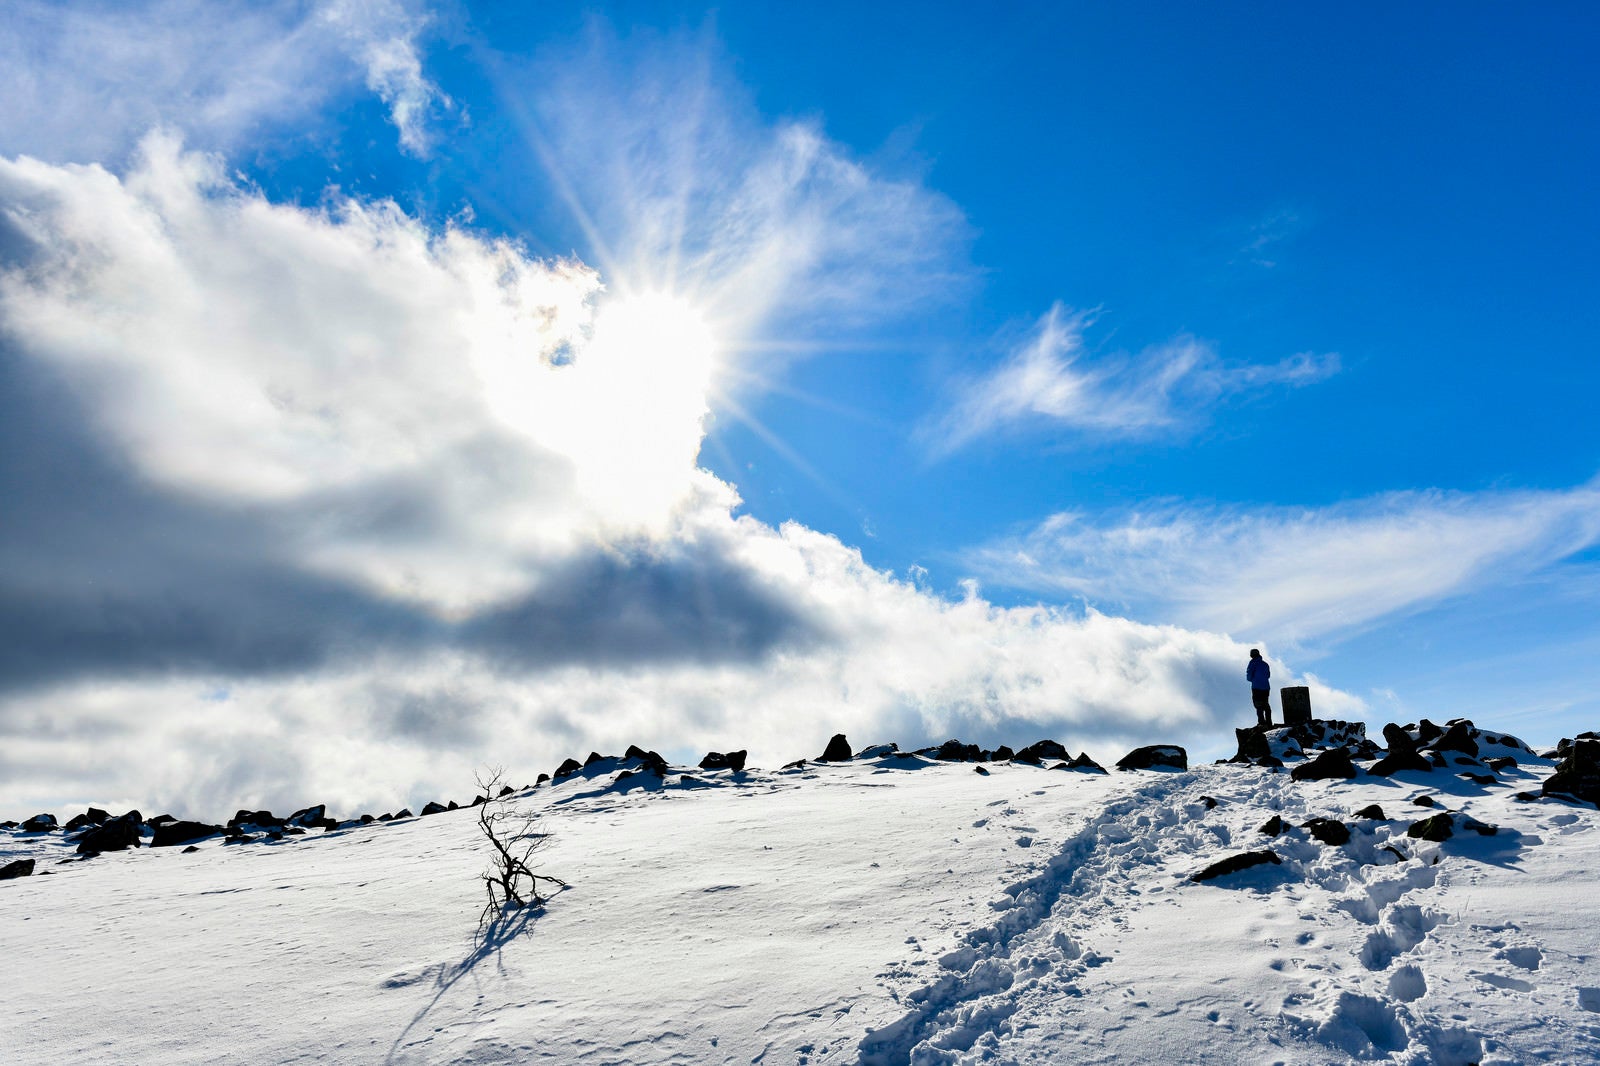 「蓼科山山頂の雪原と太陽」の写真